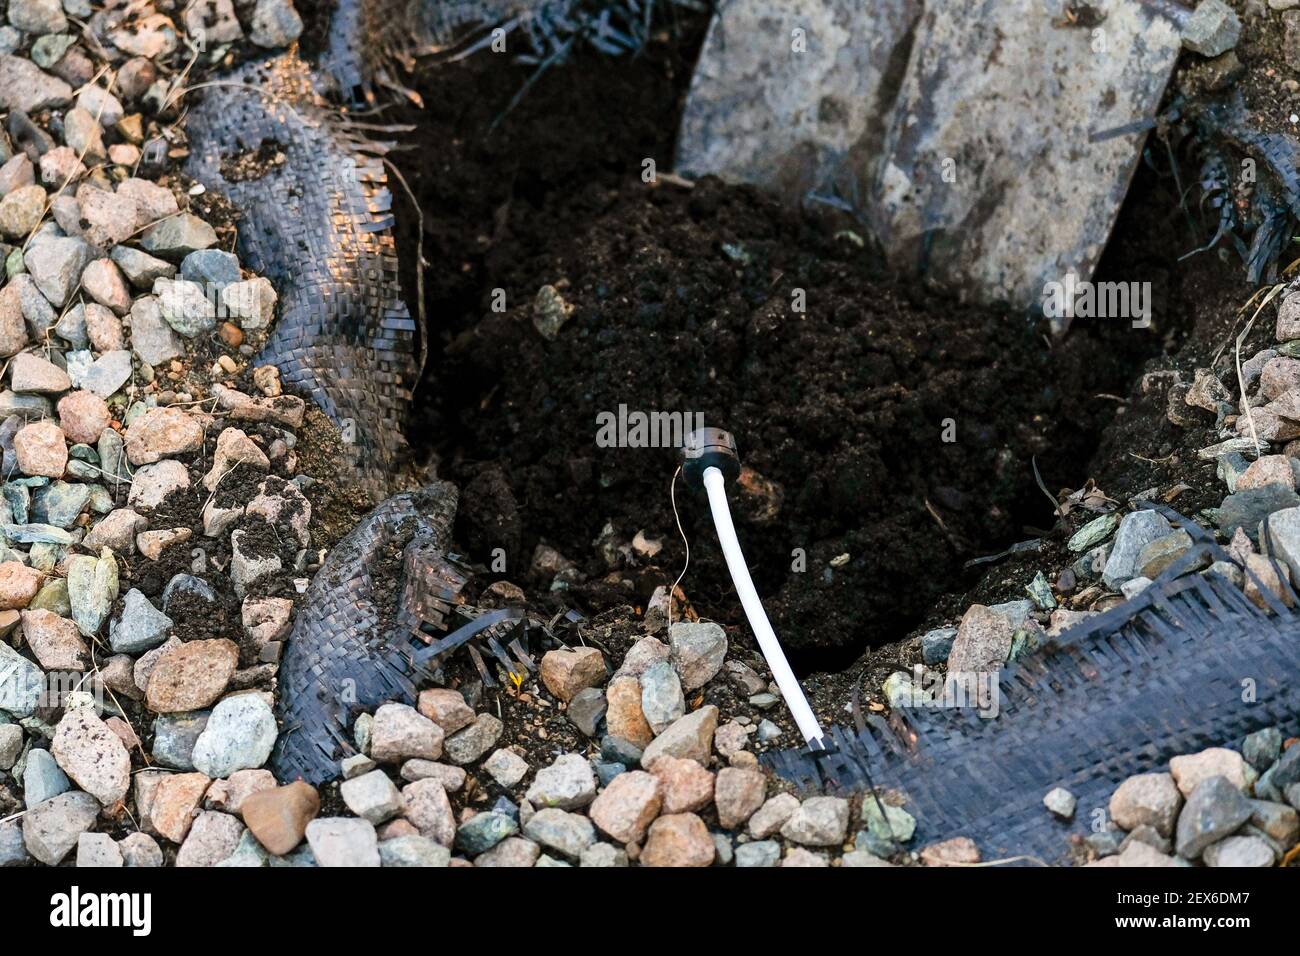 Un trou pour planter un buisson, une pelle est visible. À proximité, il y a un tuyau pour l'arrosage souterrain des plantes. Banque D'Images